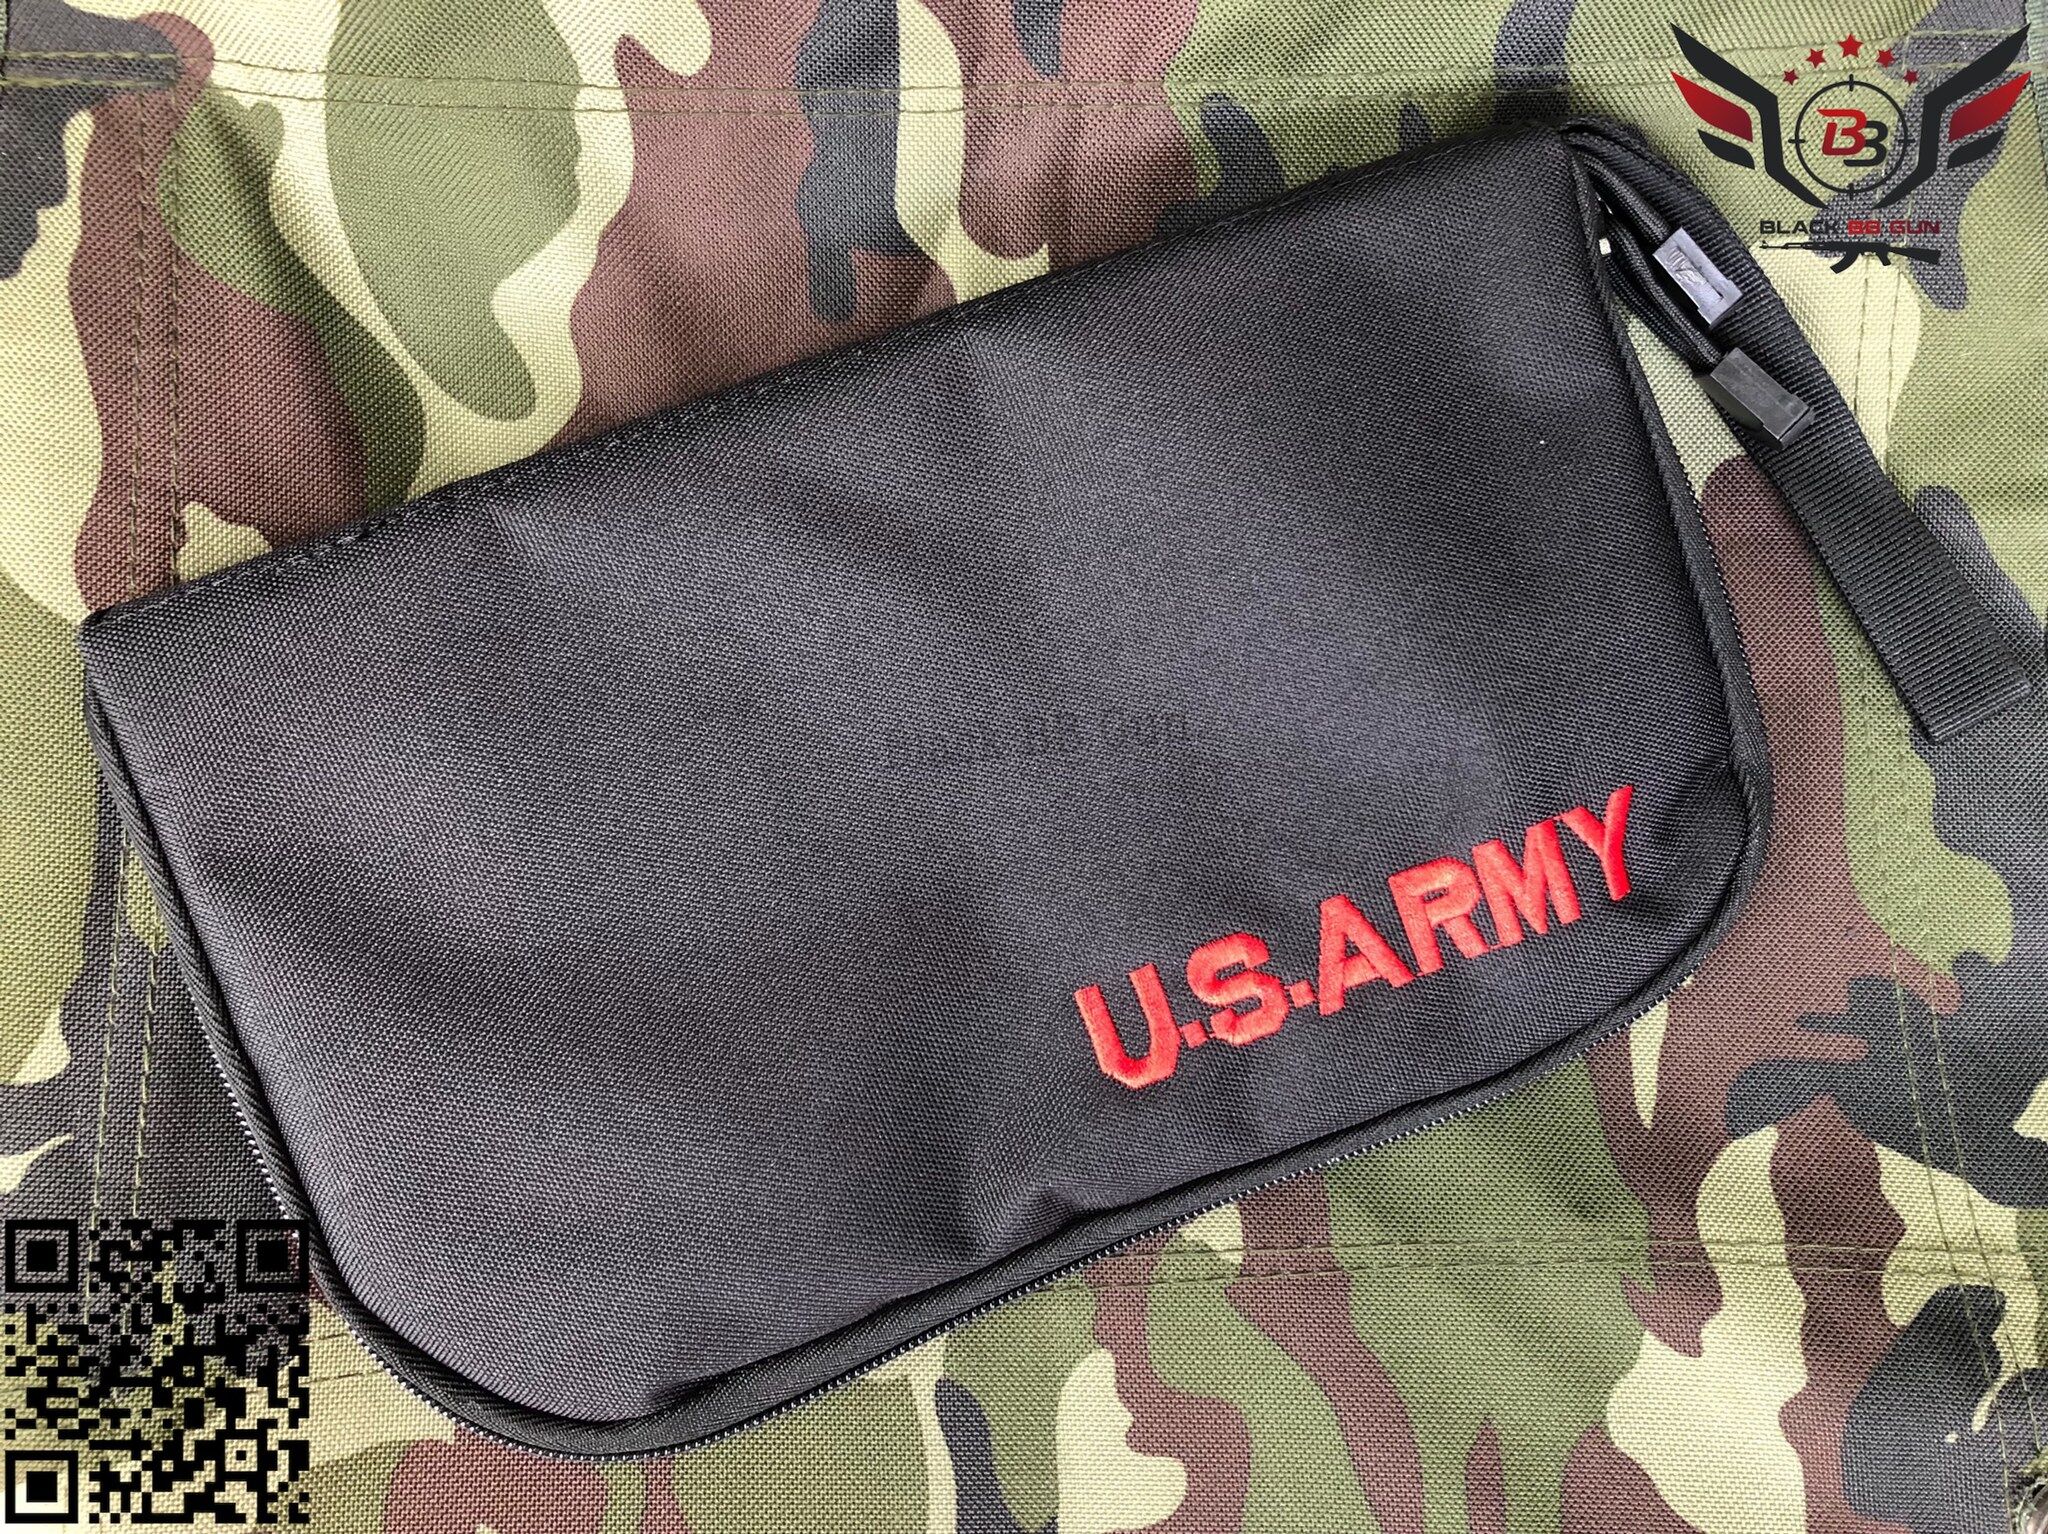 กระเป๋าผ้าใส่ปืนสั้น U.S. Army   มี5สีให้เลือก  #สีดำ #สีทราย #สีเขียว  #สีมัลติแคม #สีACU  ราคา 250 บาท